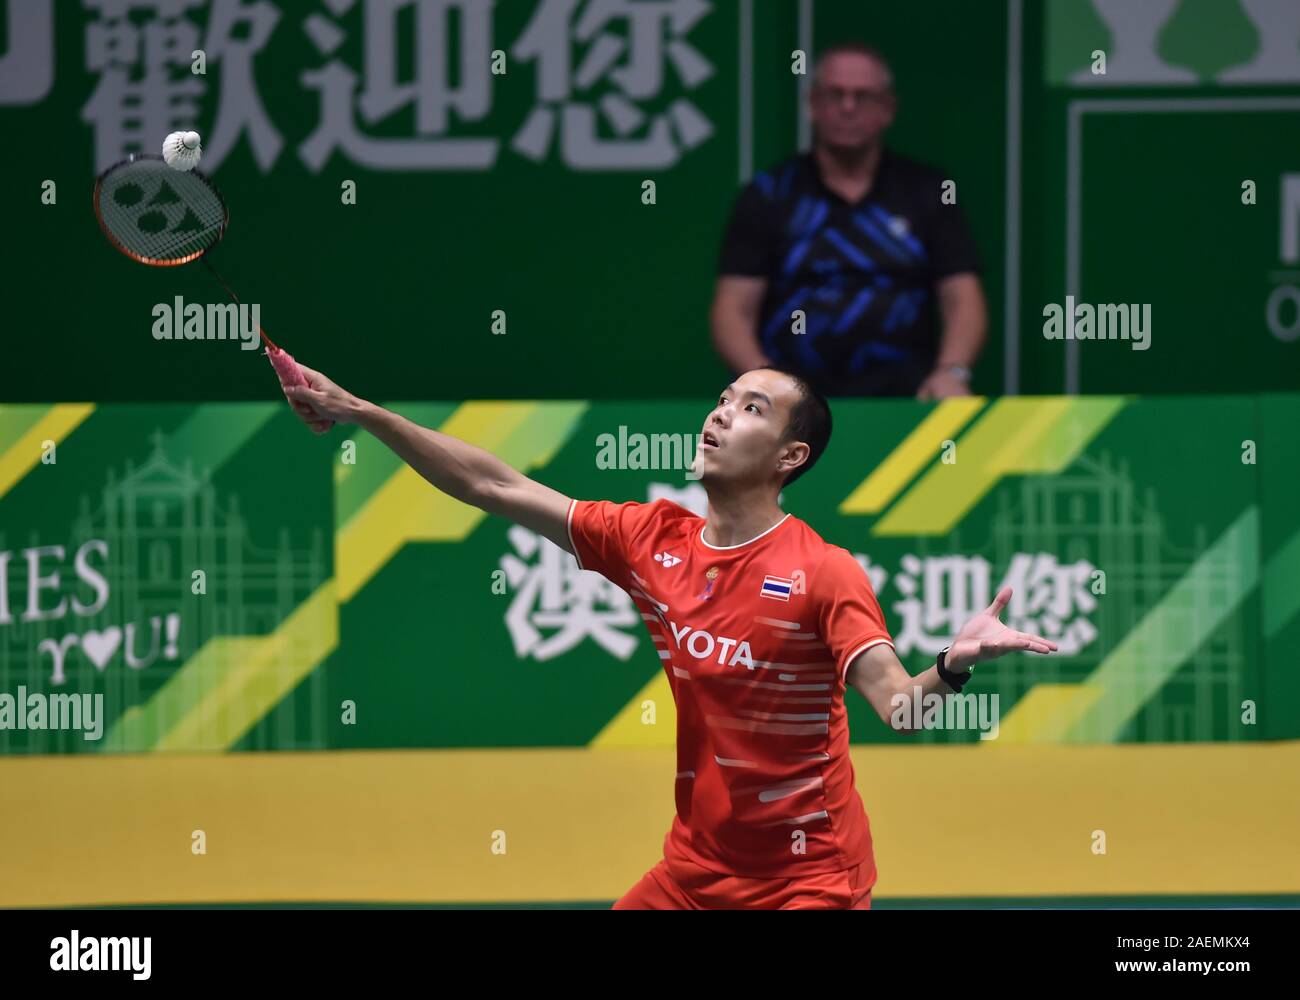 Sitthikom Thammasin de Thaïlande est en concurrence contre Shi Yuqi de Chine lors de la finale de simple hommes des Championnats canadiens de badminton 2019 Ouvert Macau, Macao en S Banque D'Images